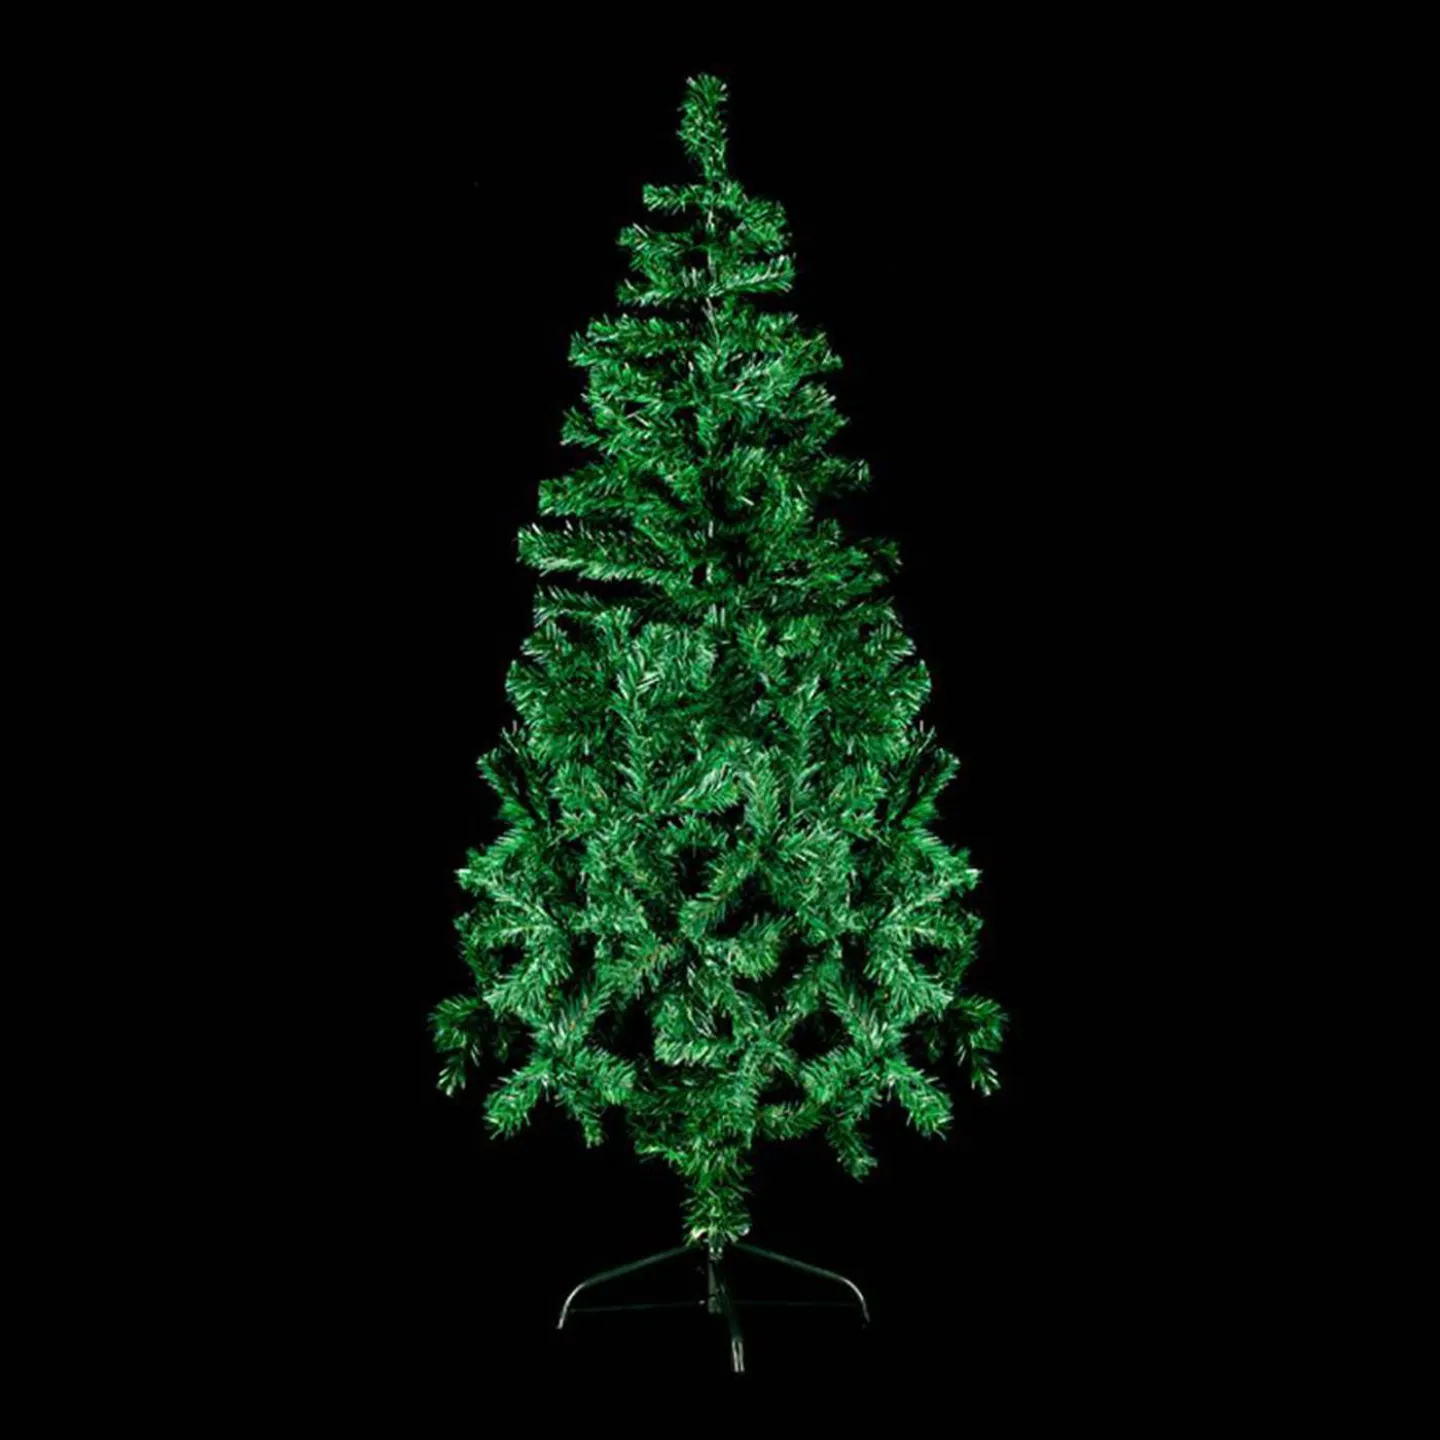 Goedkope groene kerstboom 150cm kopen.